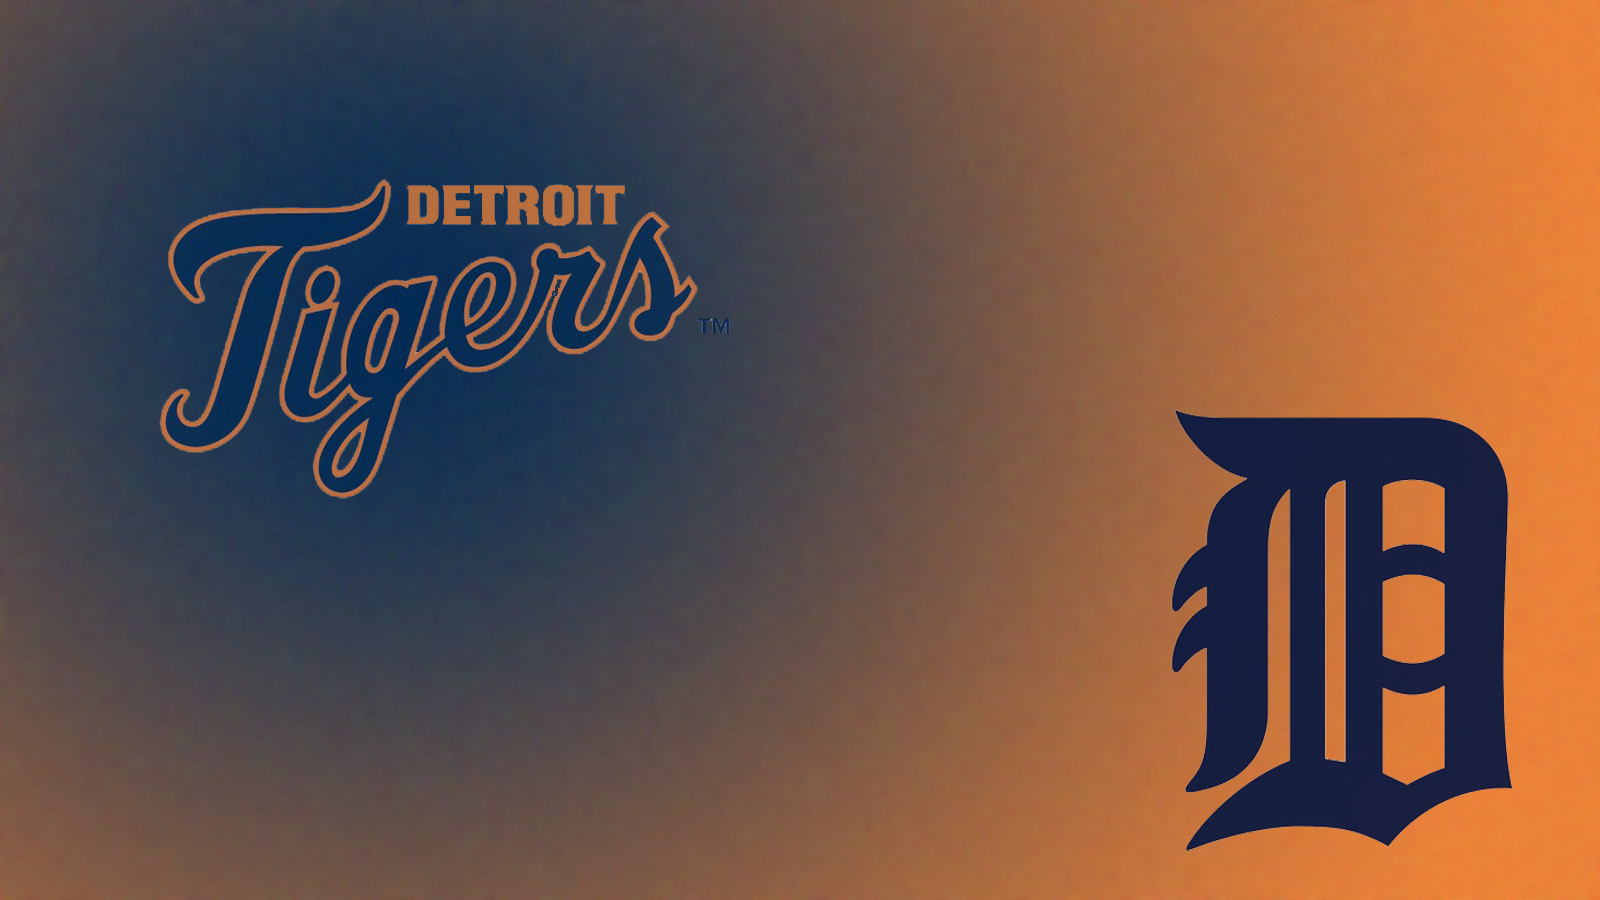 MLB Detroit Tigers wallpaper HD. Free